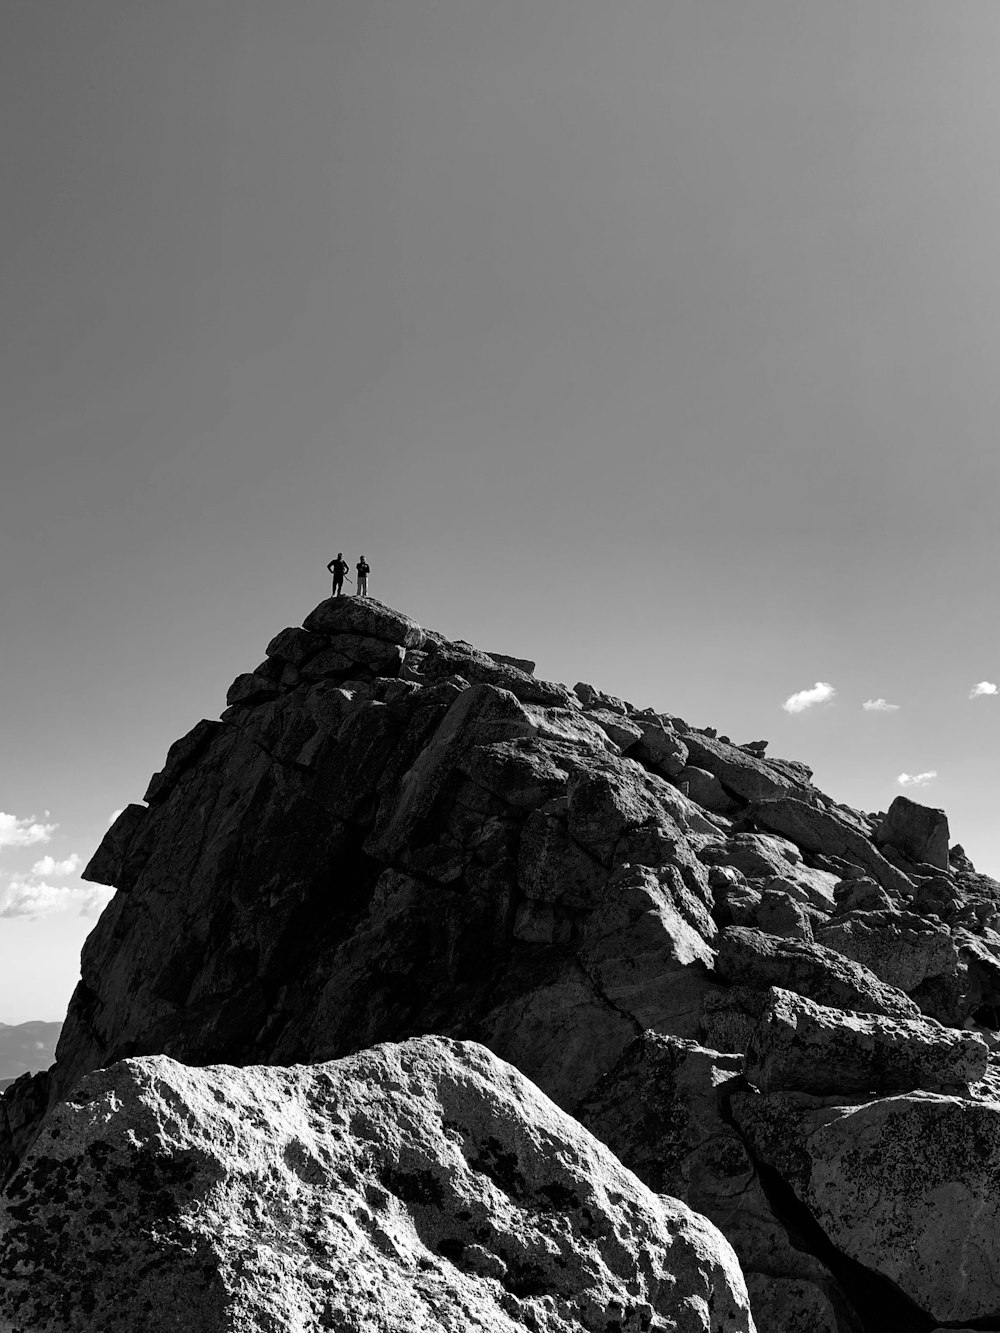 Foto en escala de grises de una persona parada en una formación rocosa